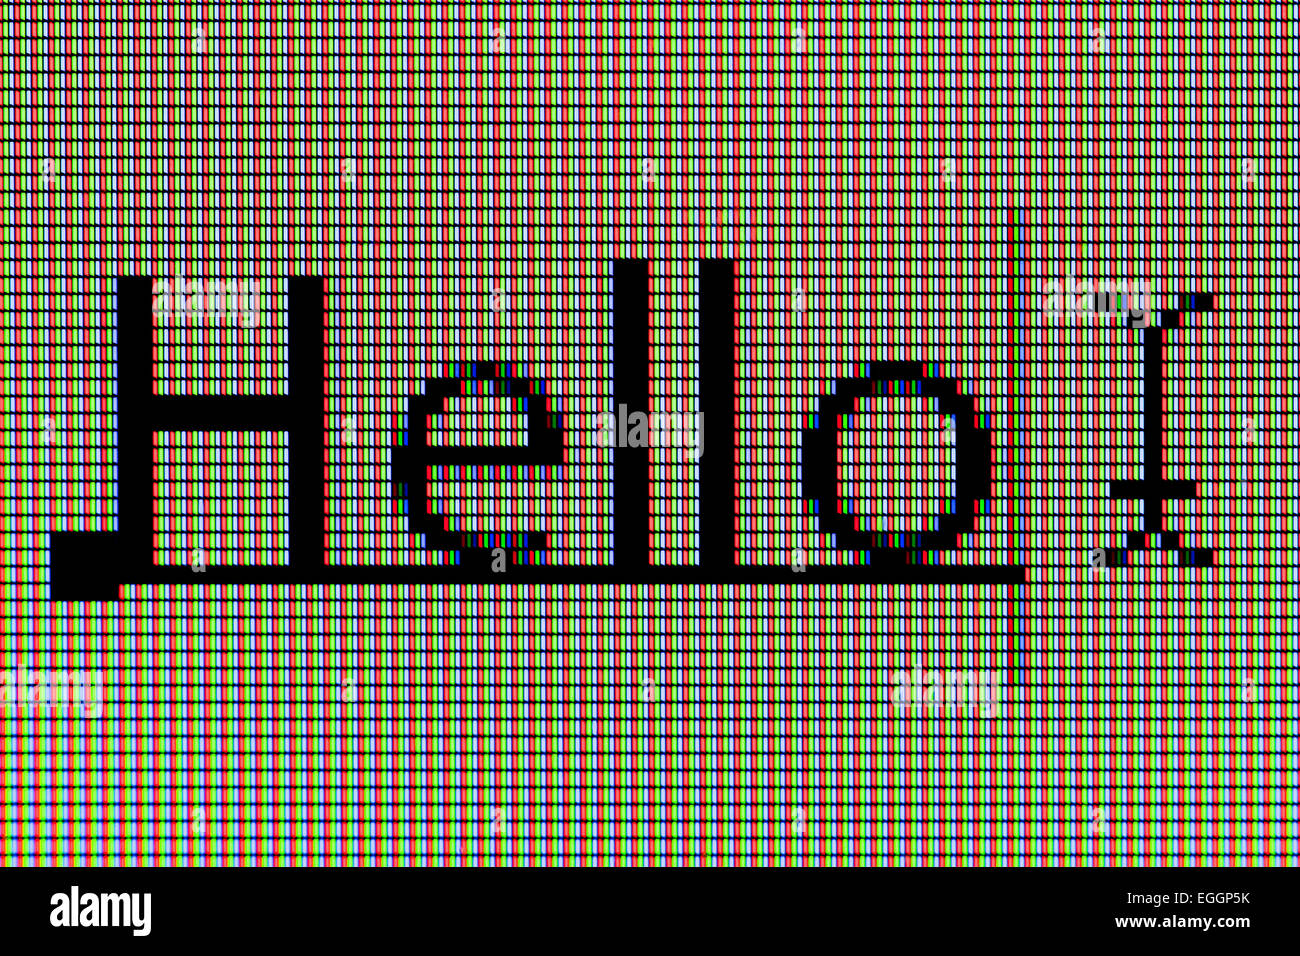 Primo piano della parola 'Hello' sul display a cristalli liquidi dello schermo del computer Foto Stock